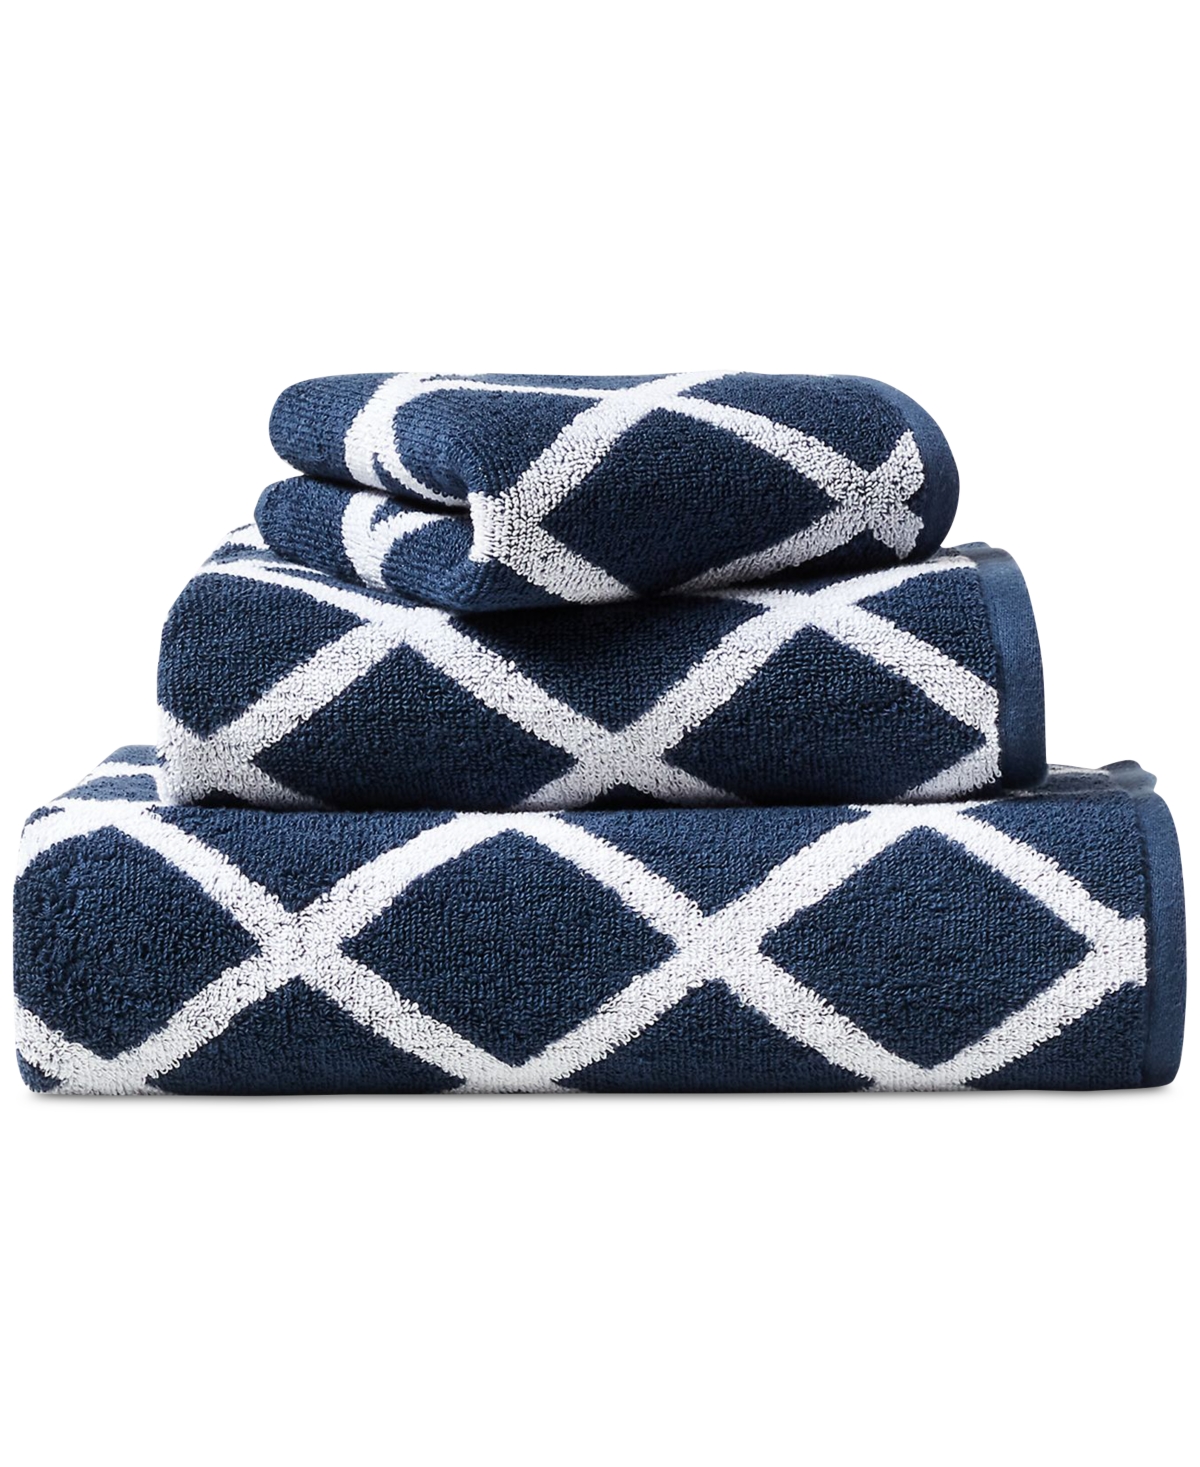 Lauren Ralph Lauren Sanders Diamond Cotton Wash Towel Bedding In Navy